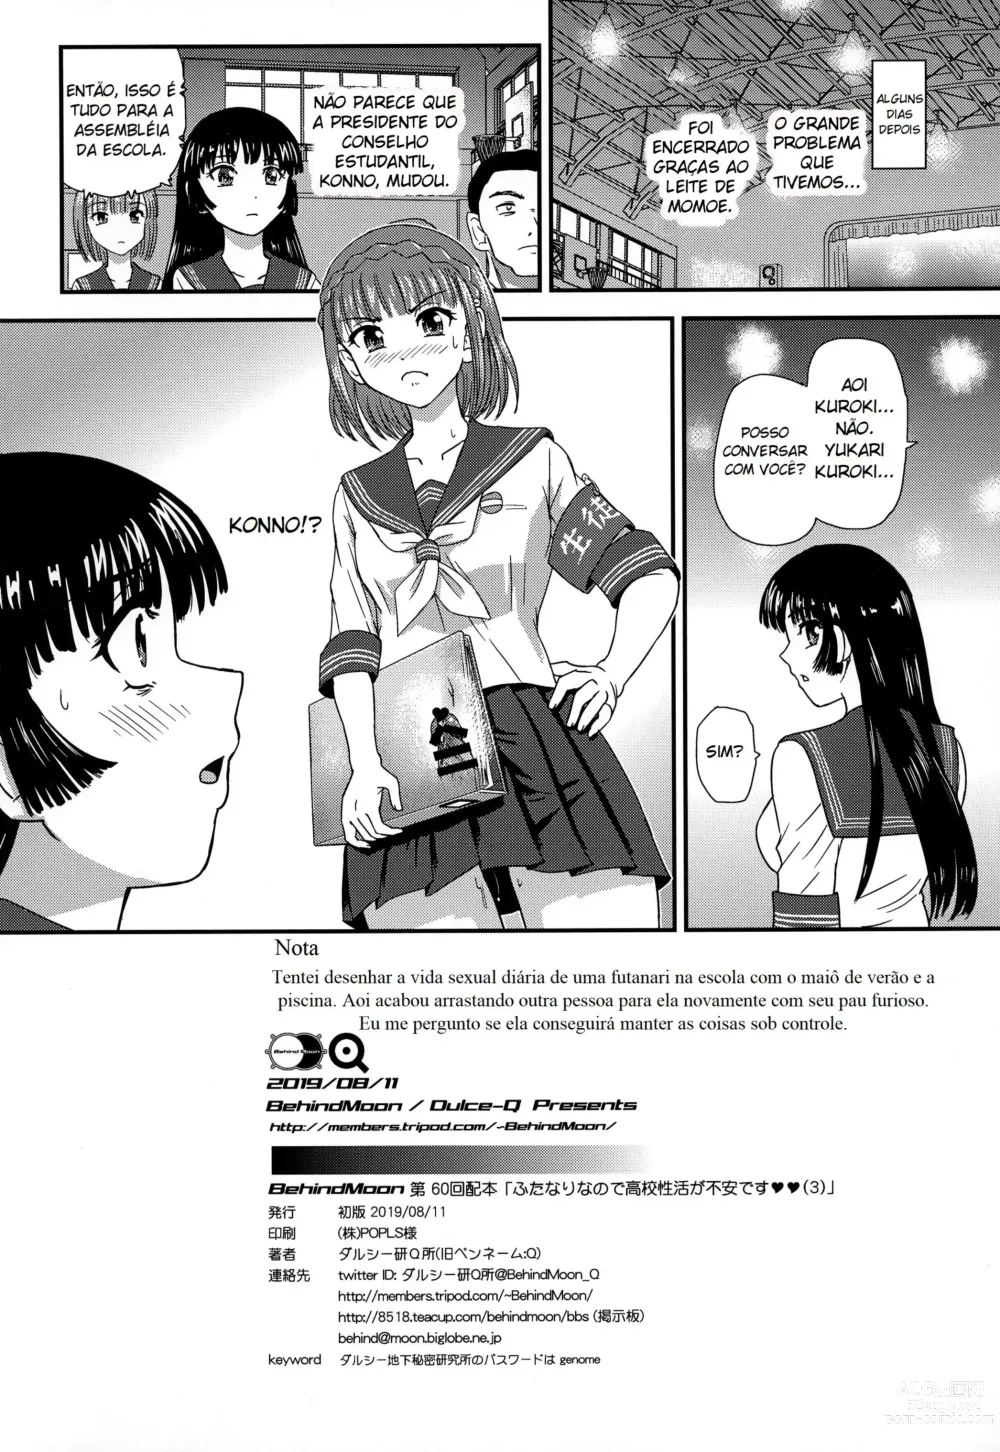 Page 38 of doujinshi A Vida Escolar De Uma Futanari - 03